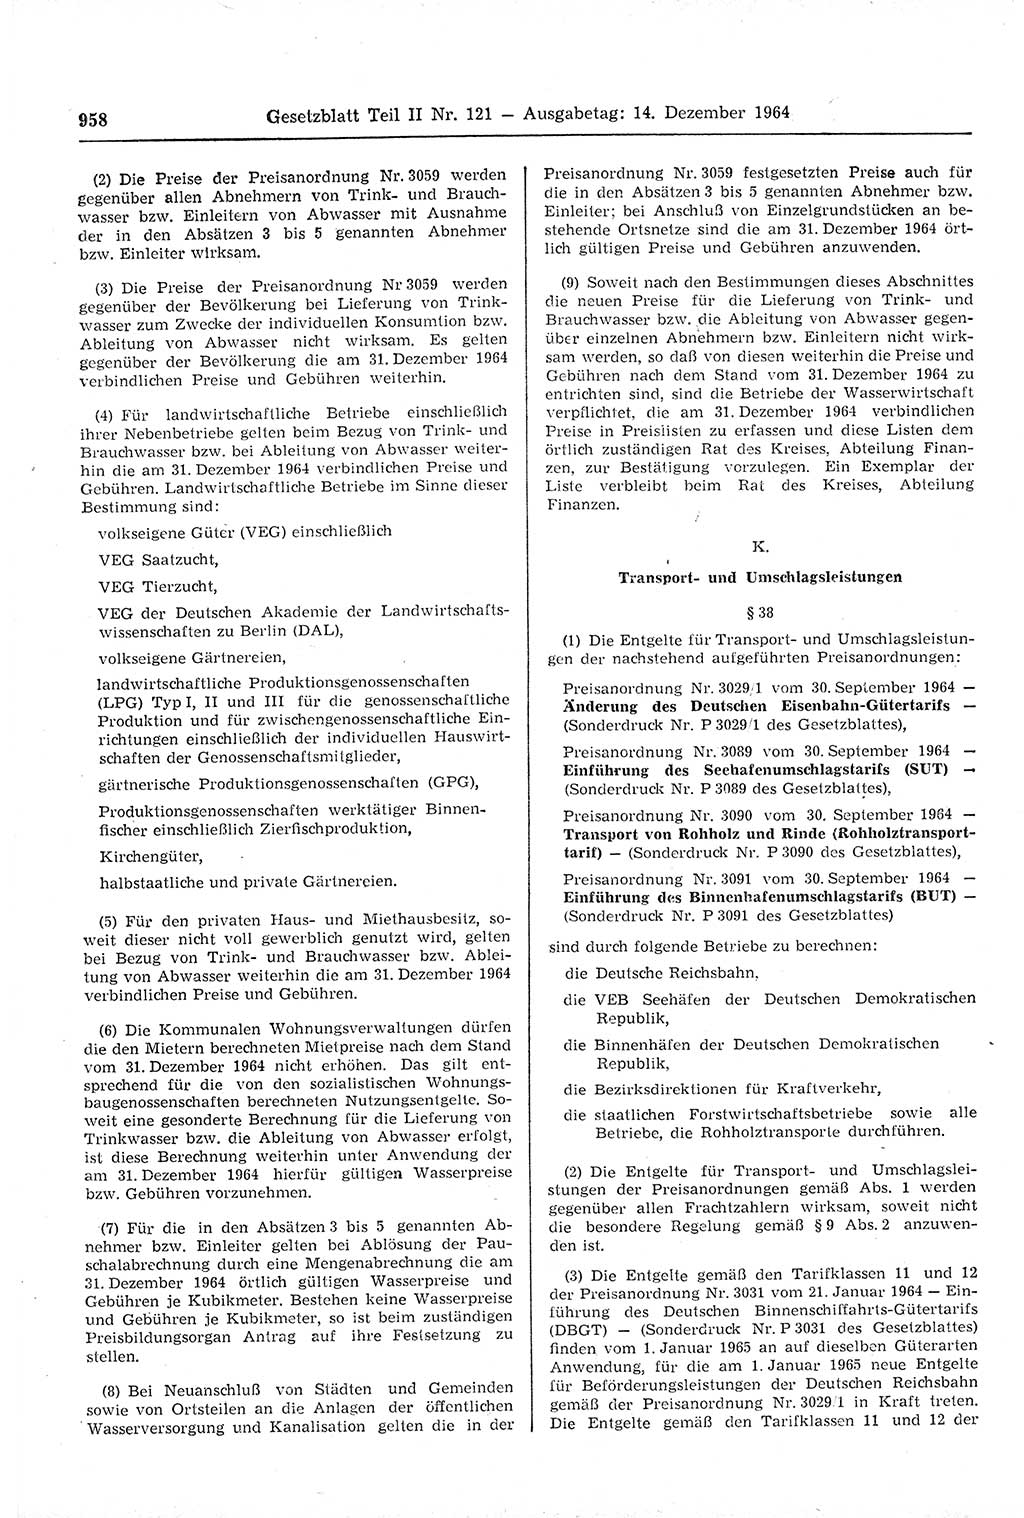 Gesetzblatt (GBl.) der Deutschen Demokratischen Republik (DDR) Teil ⅠⅠ 1964, Seite 958 (GBl. DDR ⅠⅠ 1964, S. 958)